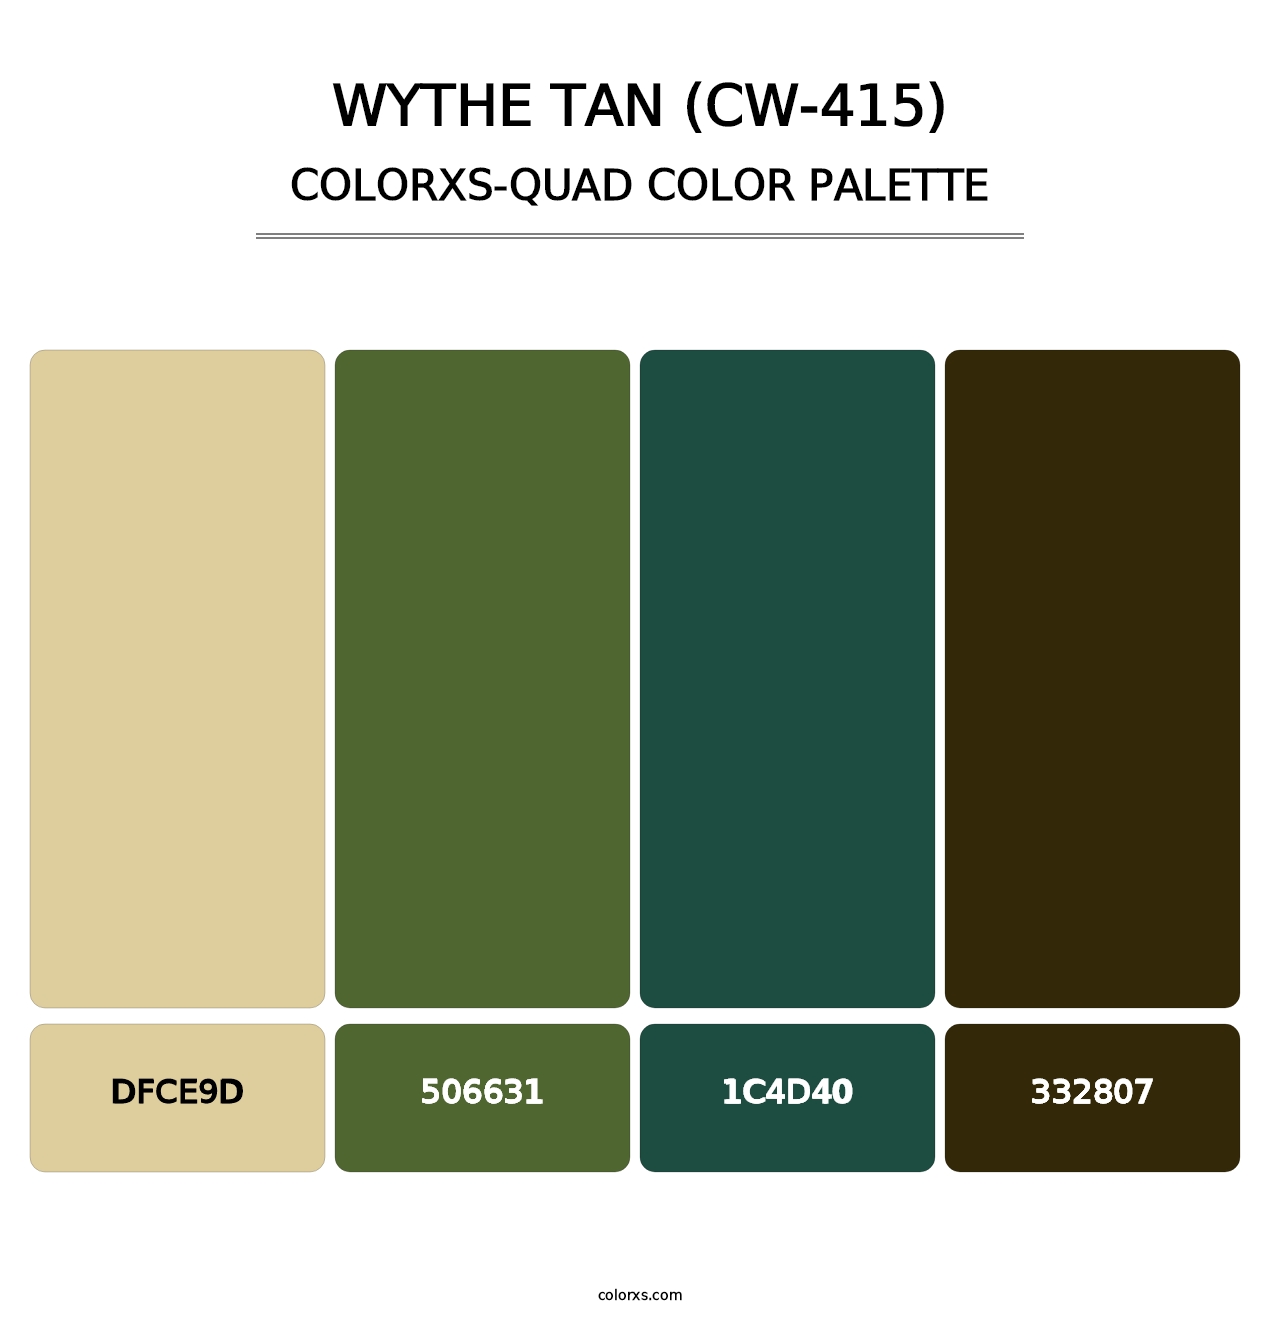 Wythe Tan (CW-415) - Colorxs Quad Palette